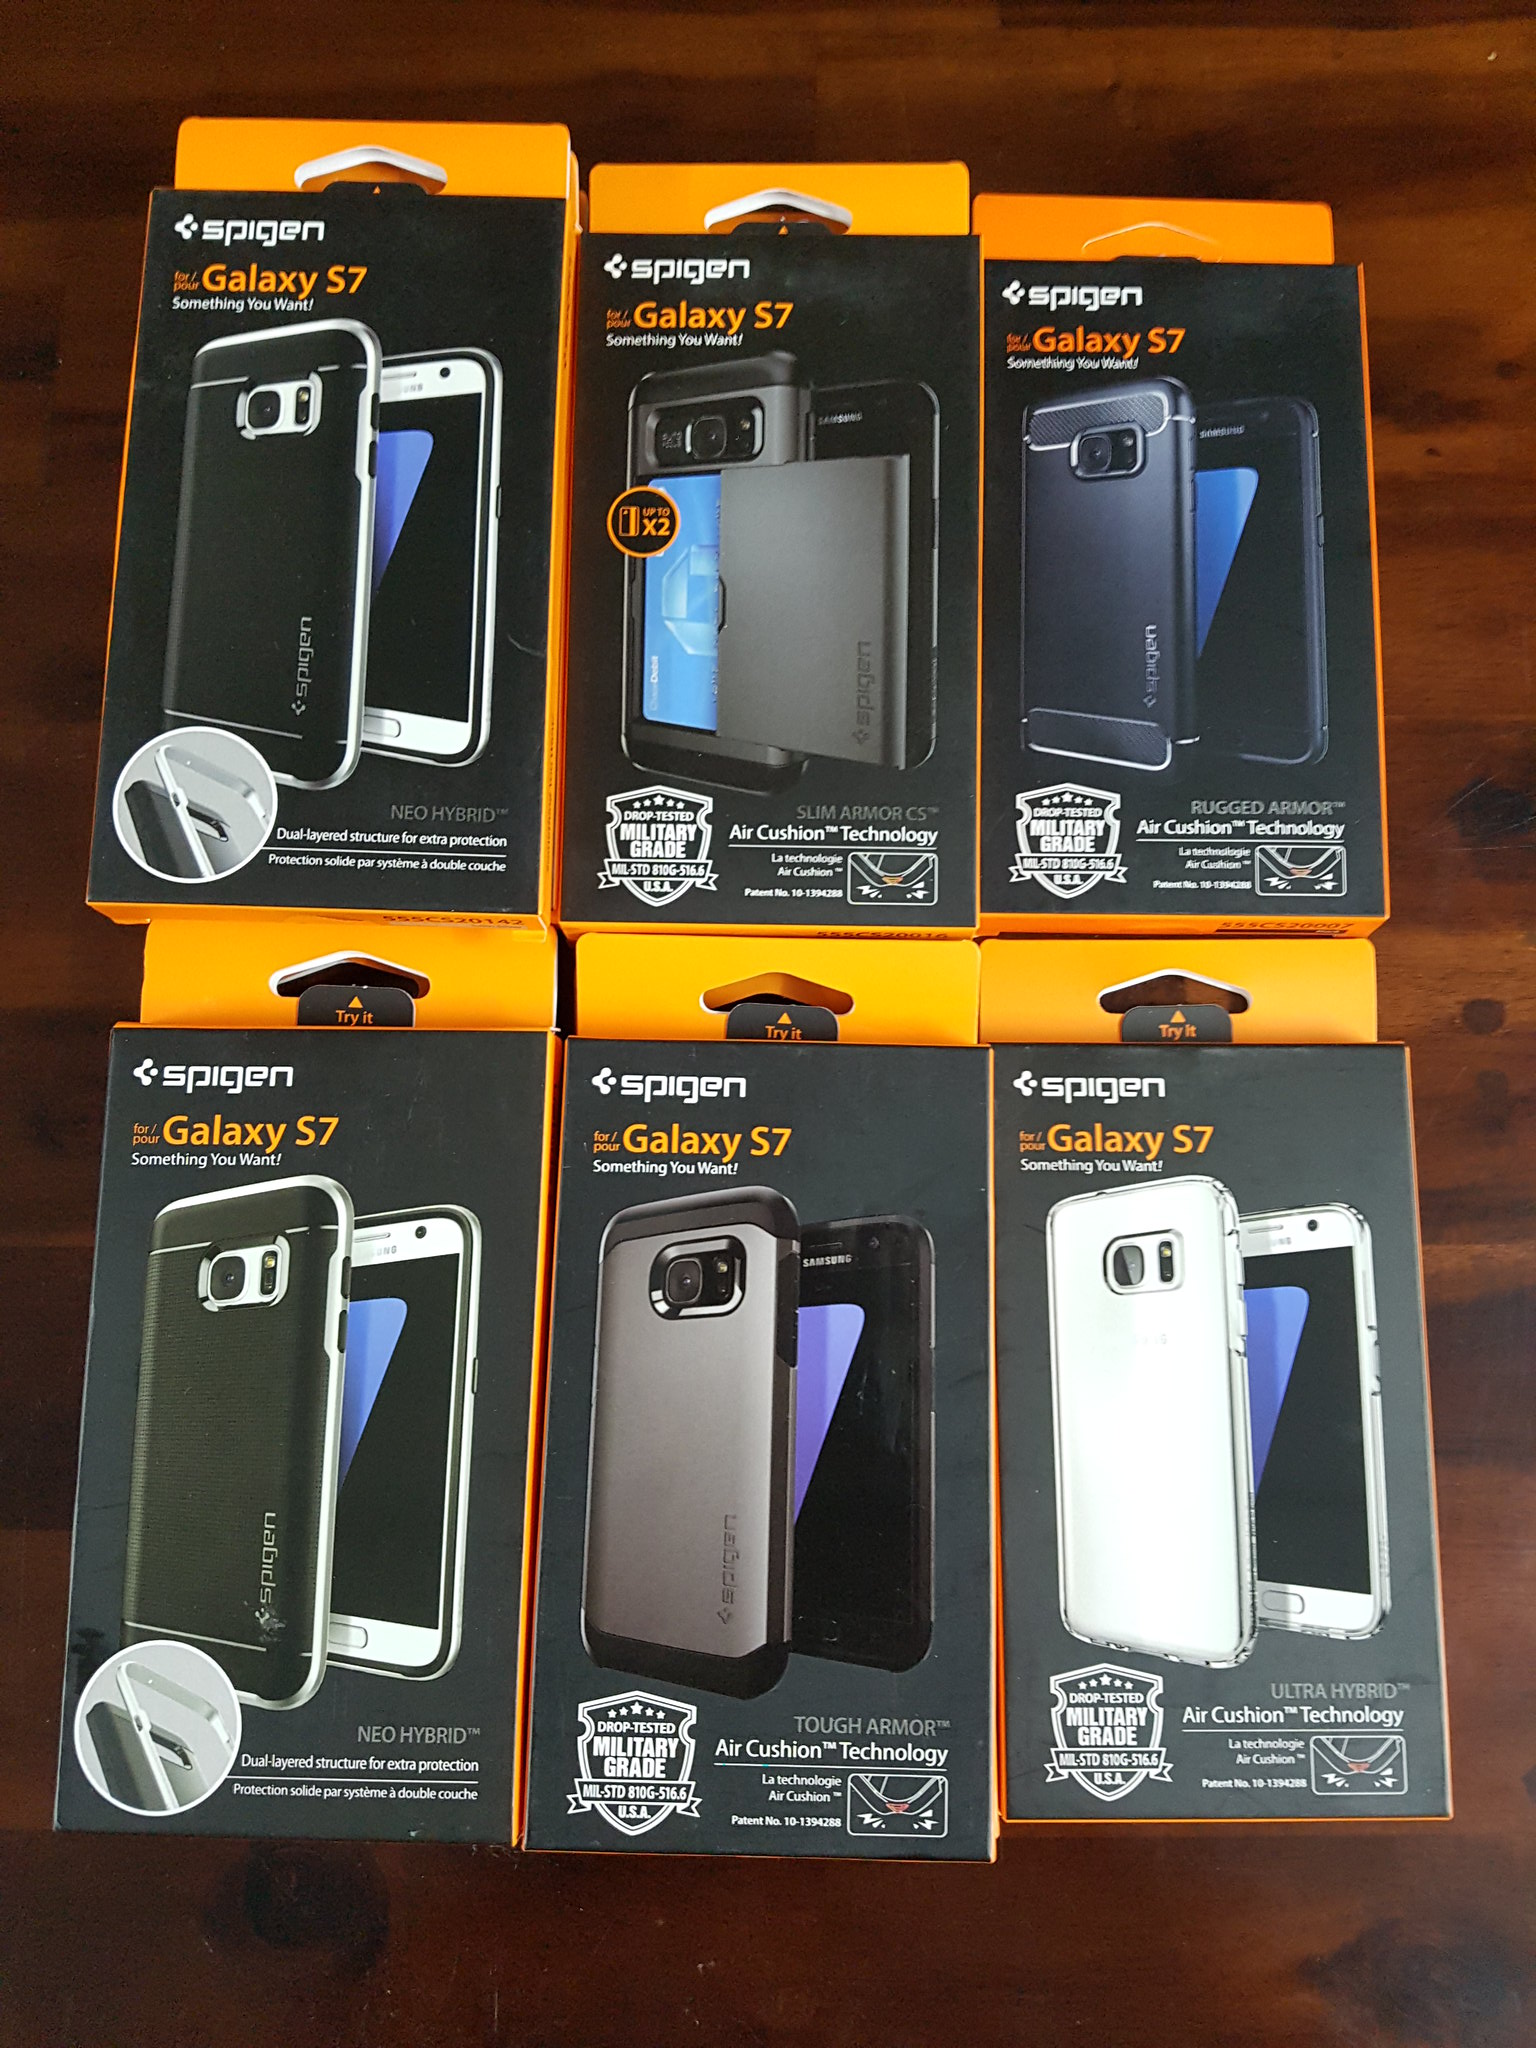 Ốp lưng Spigen iPhone SE,5s,5, S7,S7 Edge, Note5, HTC10, Nexus siêu rẻ chất lượng Mỹ - 8